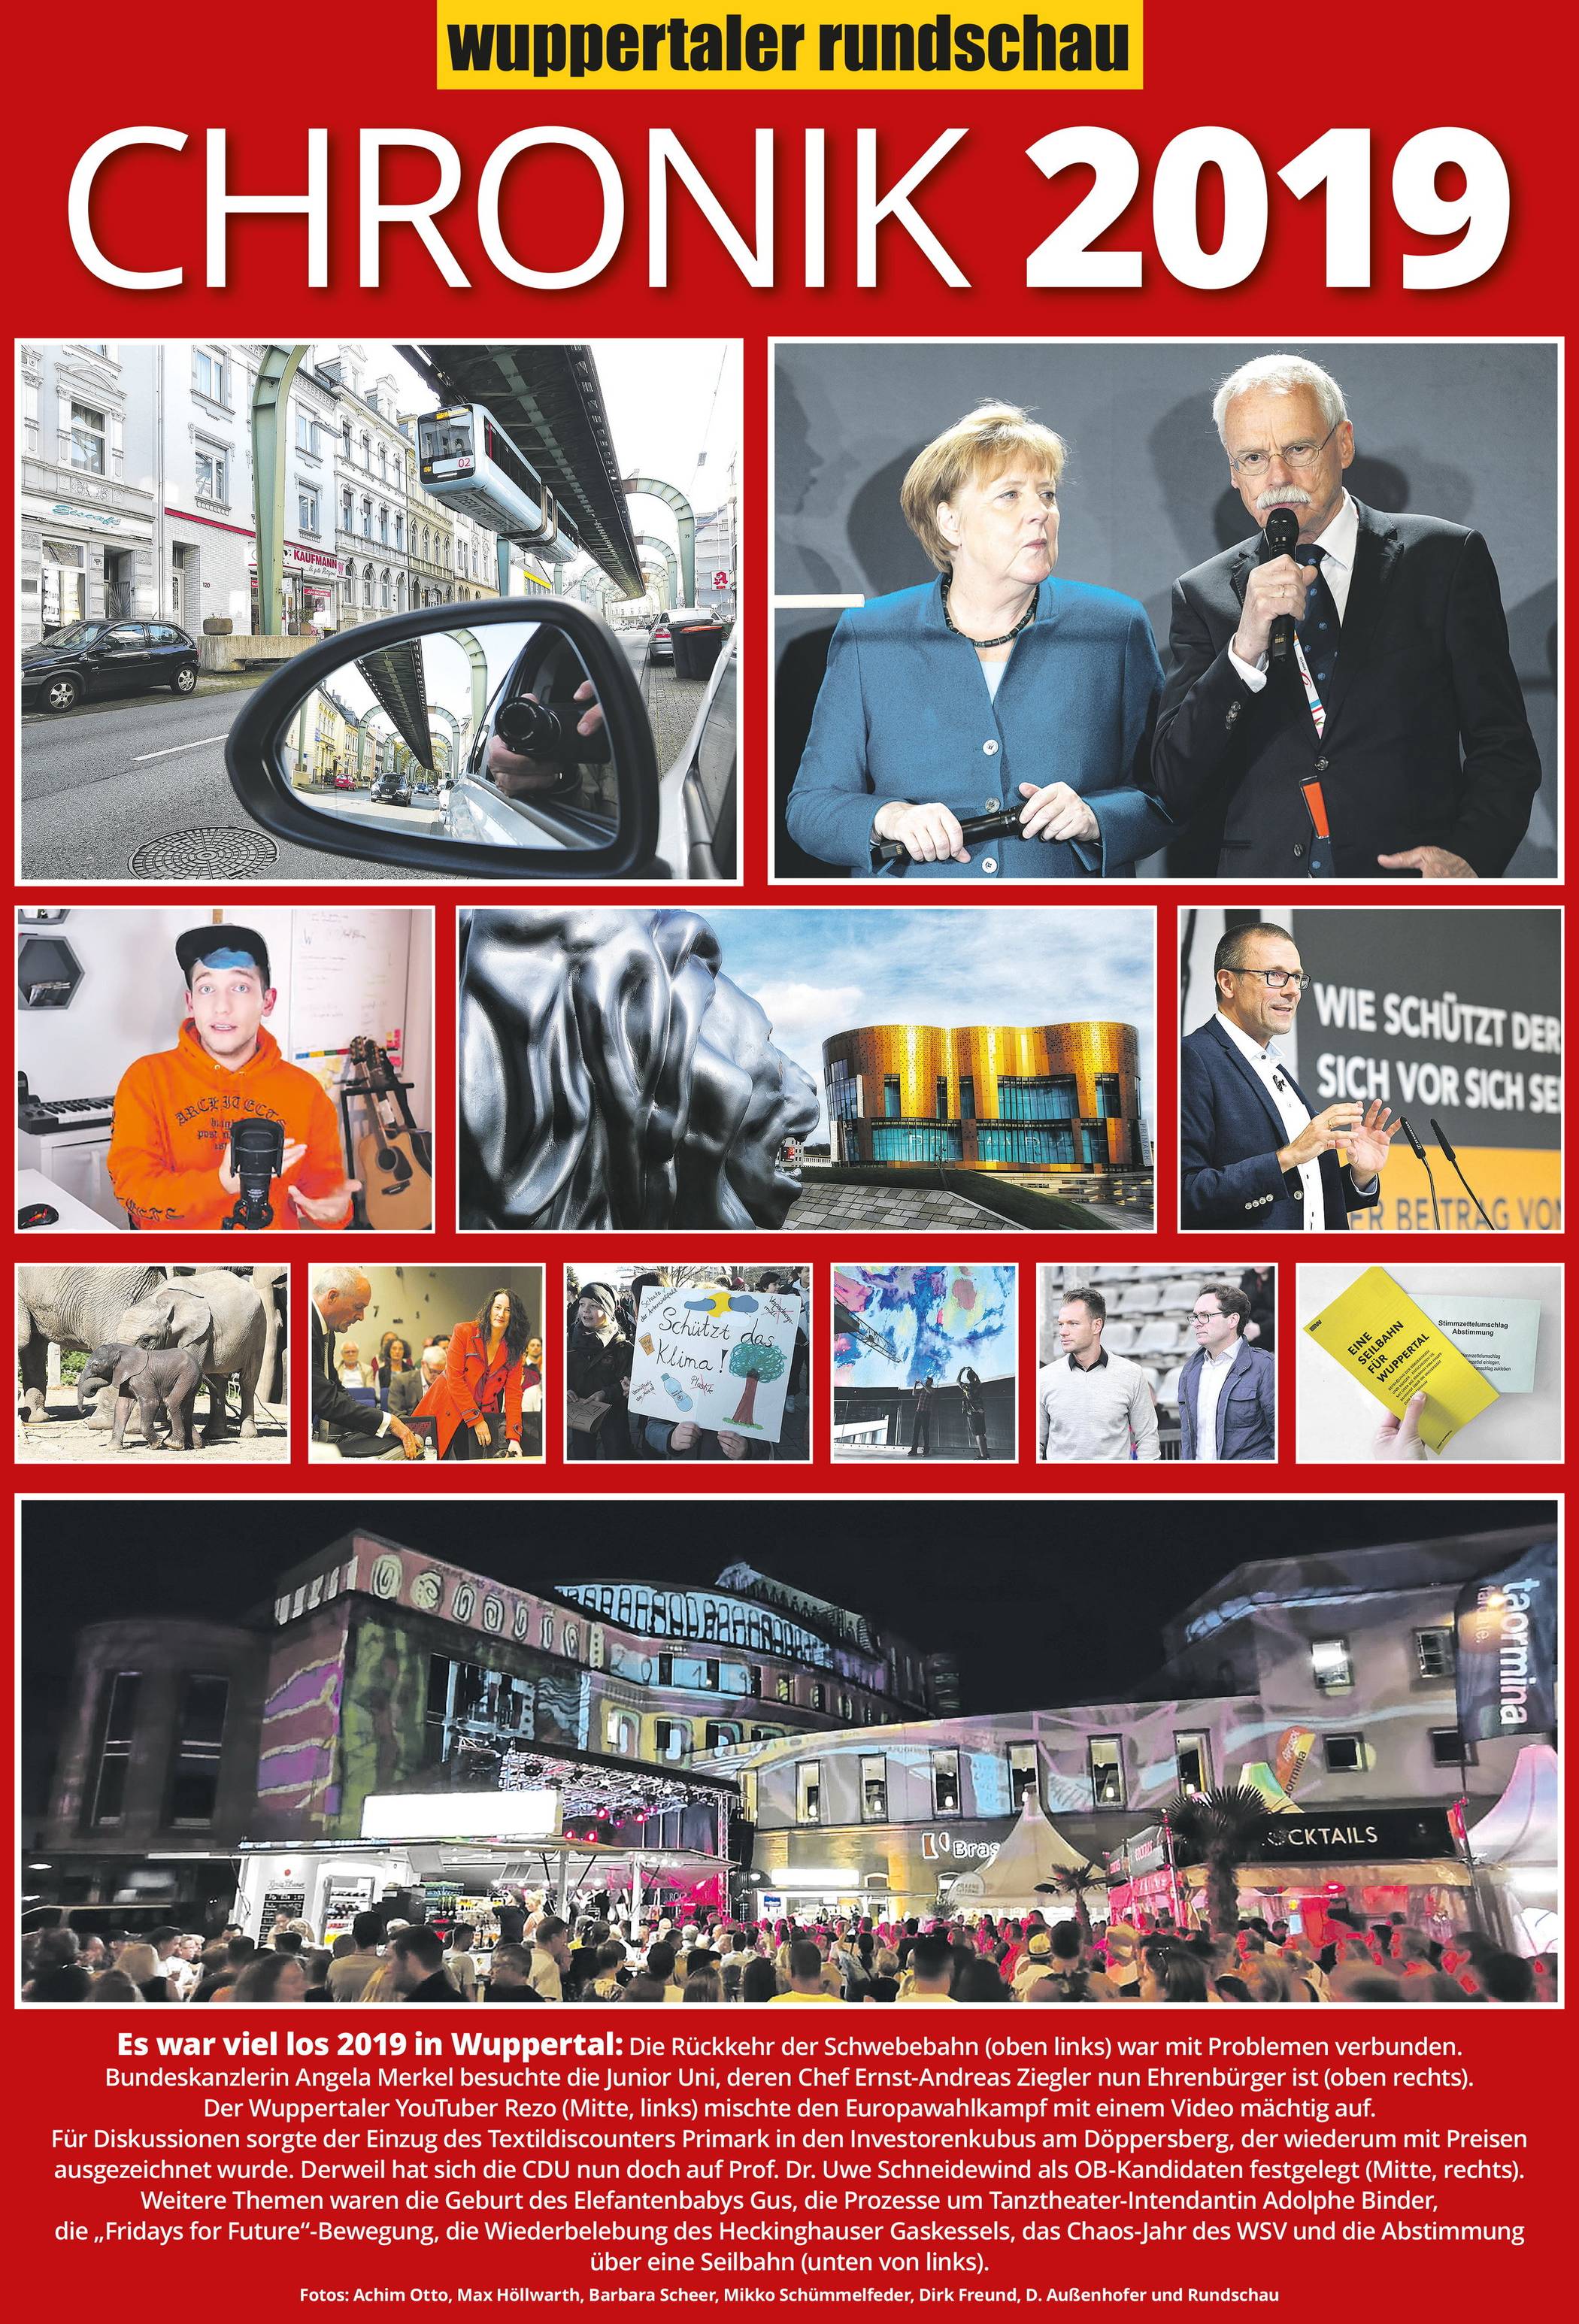 Wuppertals Chronik 2019: U wie Umzug an den Rhein